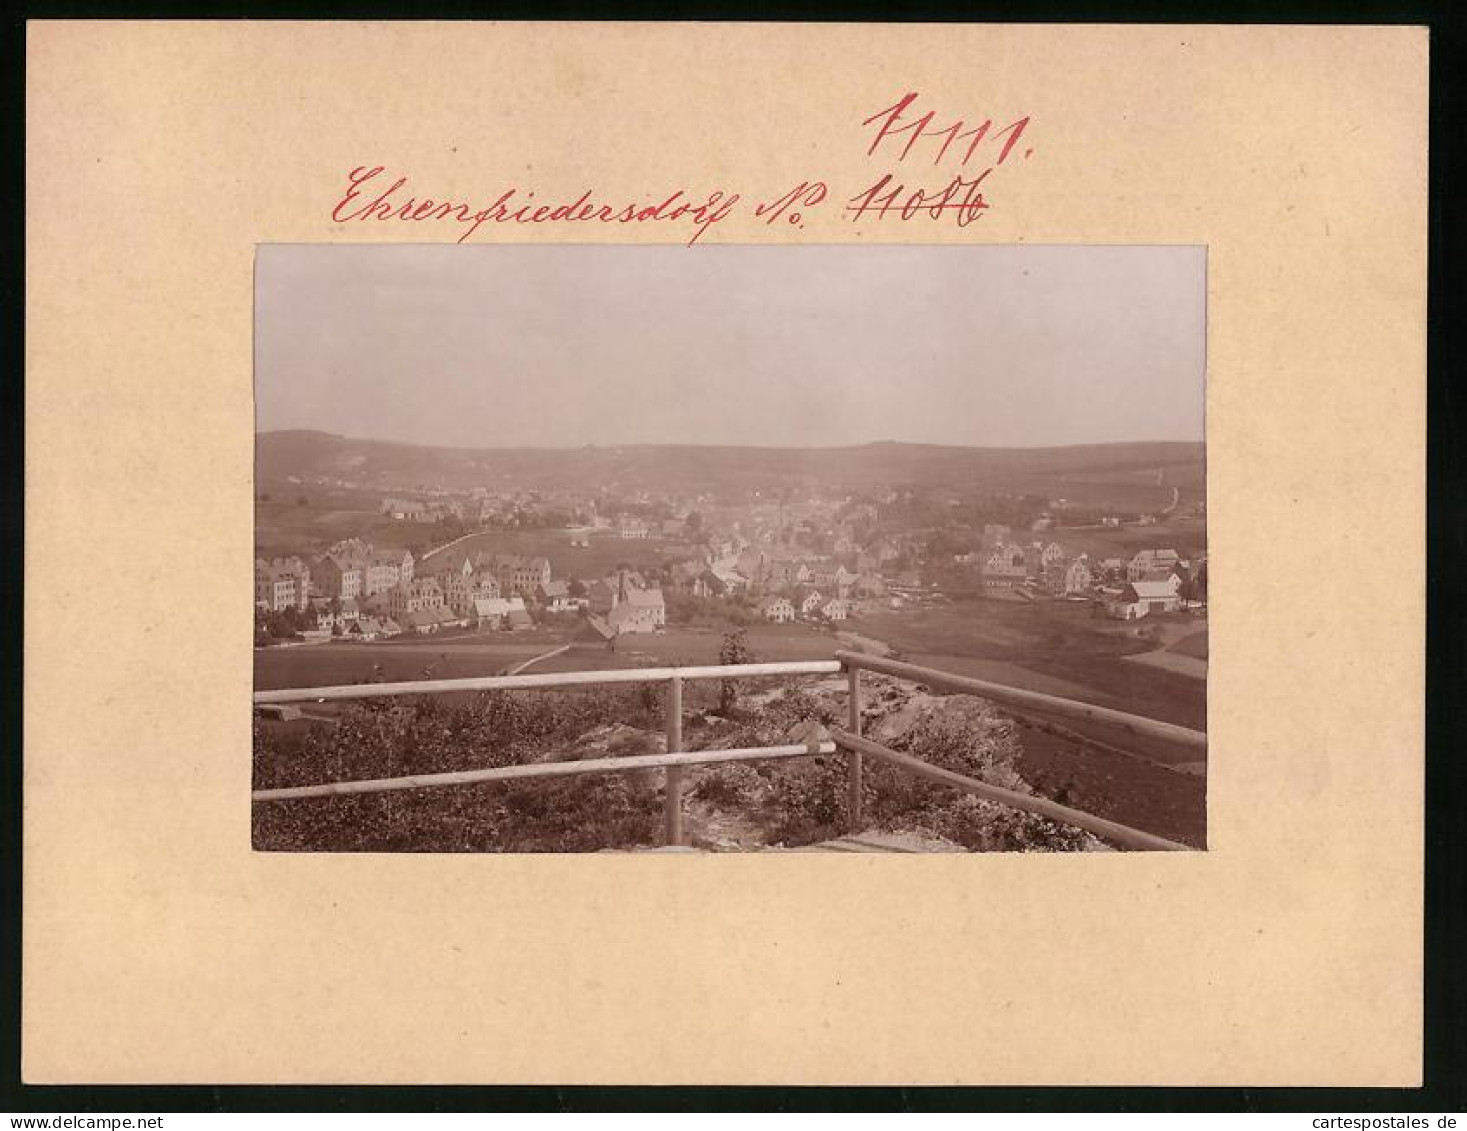 Fotografie Brück & Sohn Meissen, Ansicht Ehrenfriedersdorf, Blick Von Einem Aussichtspunkt  - Plaatsen